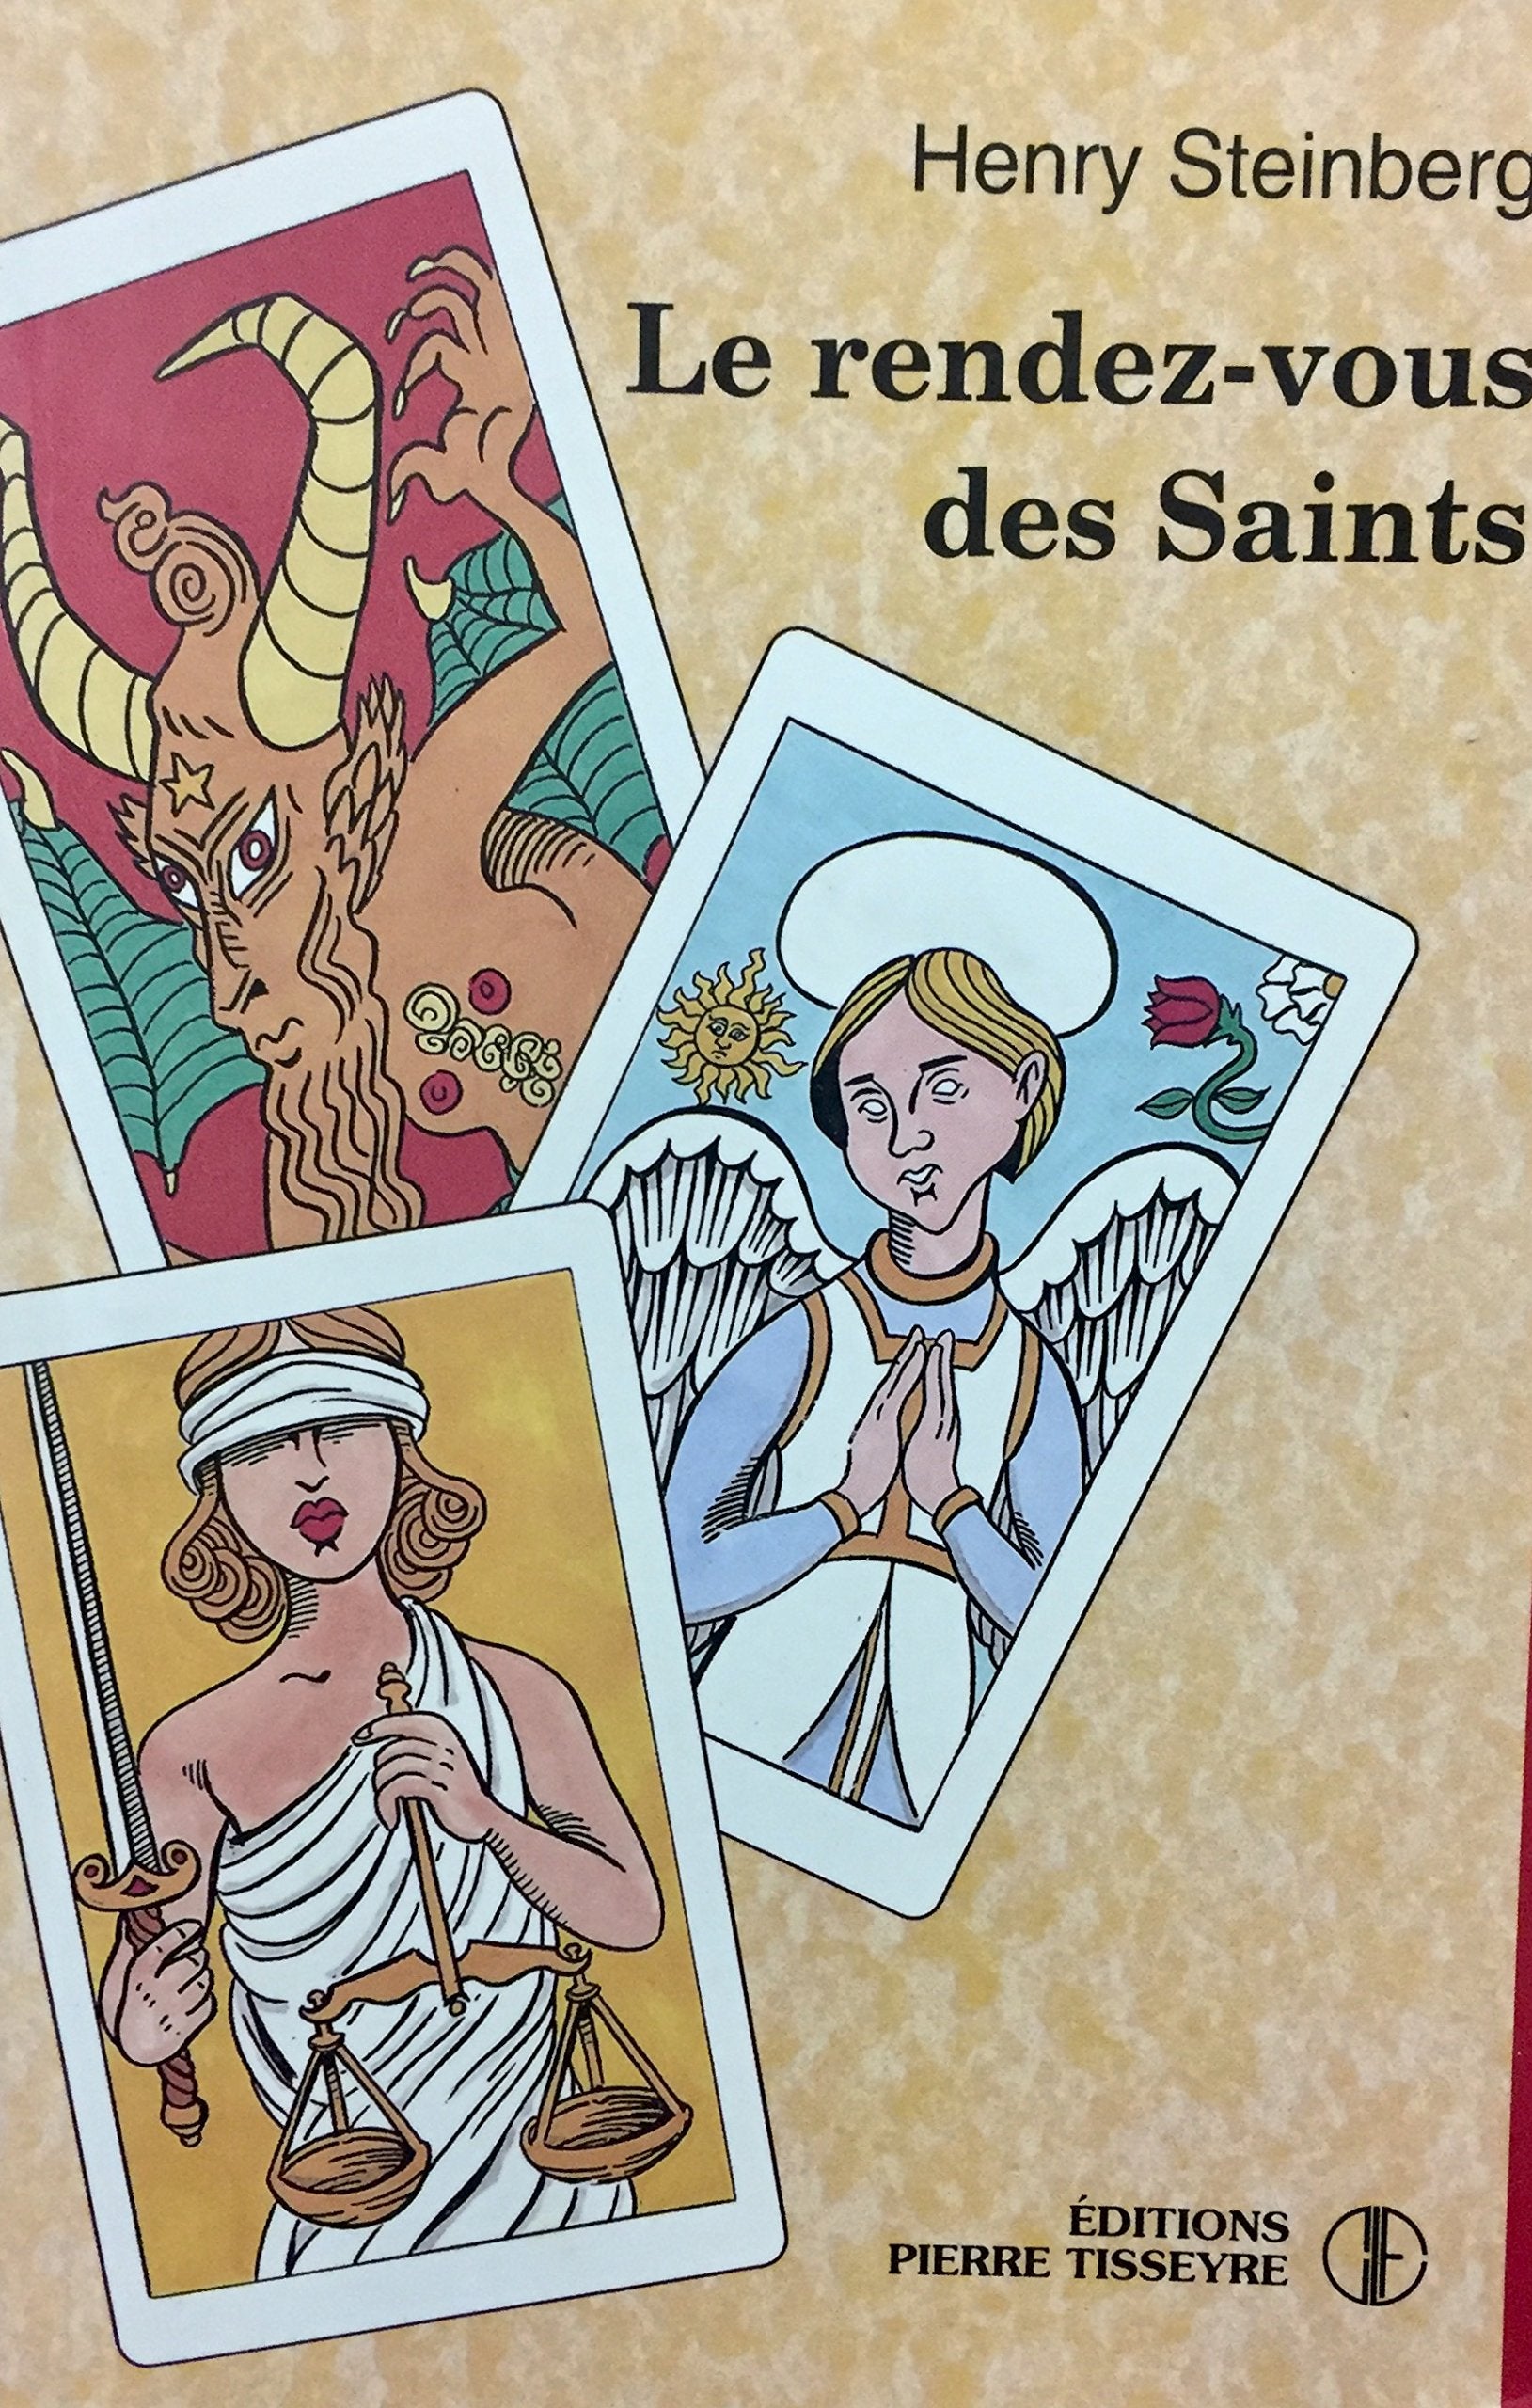 Livre ISBN 2890515583 Le rendez-vous des Saints (Henry Steinberg)